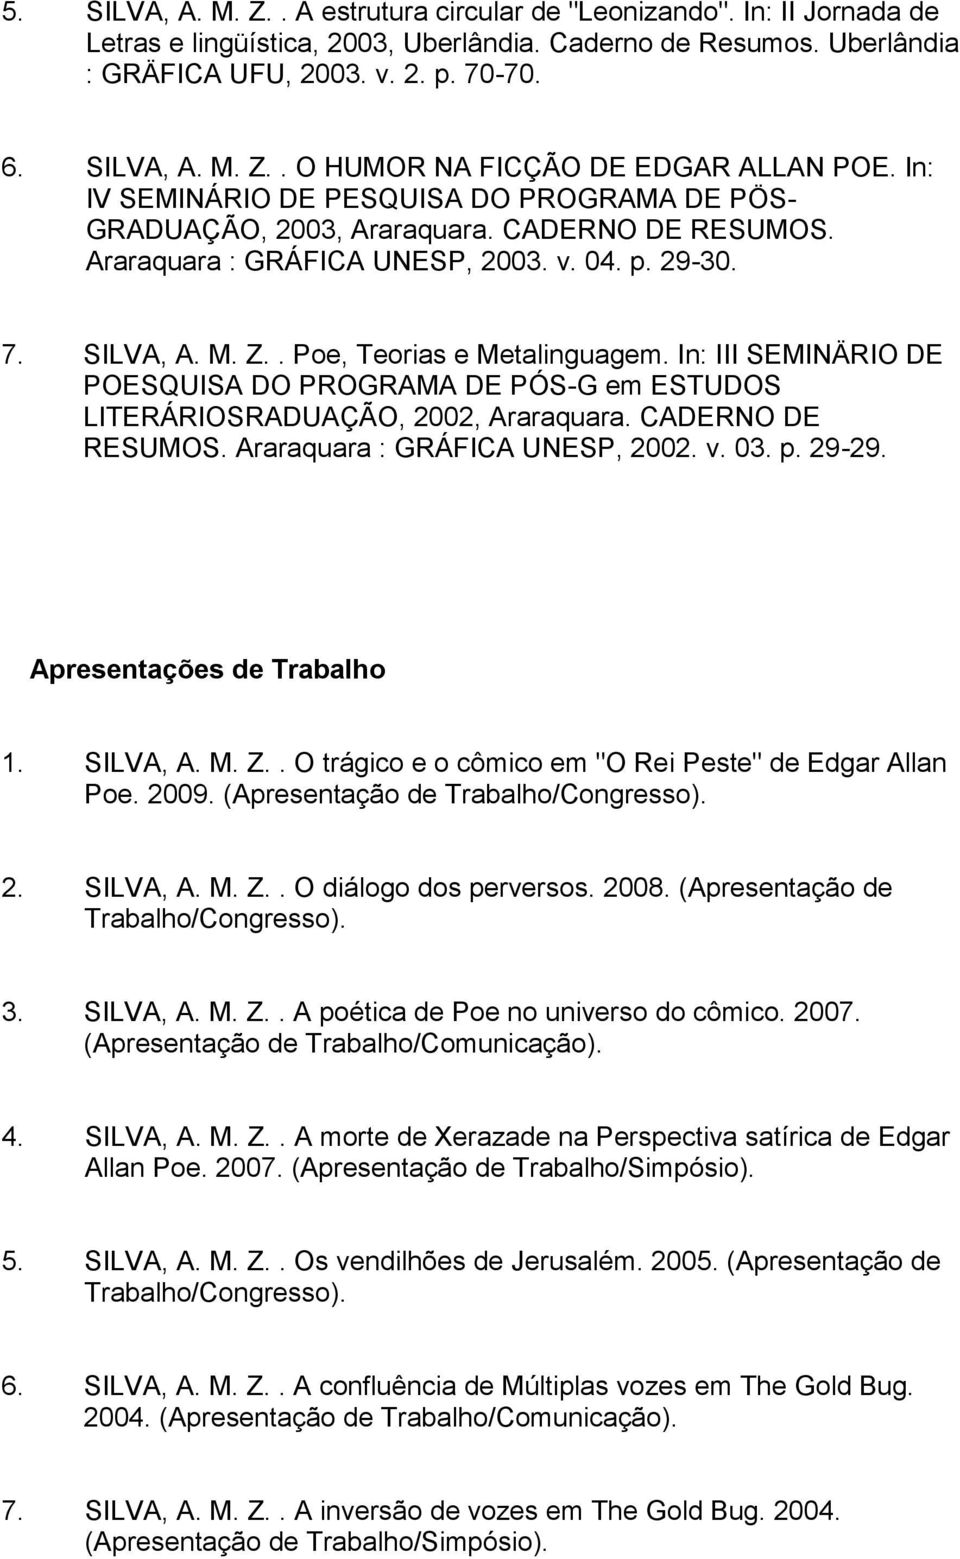 In: III SEMINÄRIO DE POESQUISA DO PROGRAMA DE PÓS-G em ESTUDOS LITERÁRIOSRADUAÇÃO, 2002, Araraquara. CADERNO DE RESUMOS. Araraquara : GRÁFICA UNESP, 2002. v. 03. p. 29-29. Apresentações de Trabalho 1.